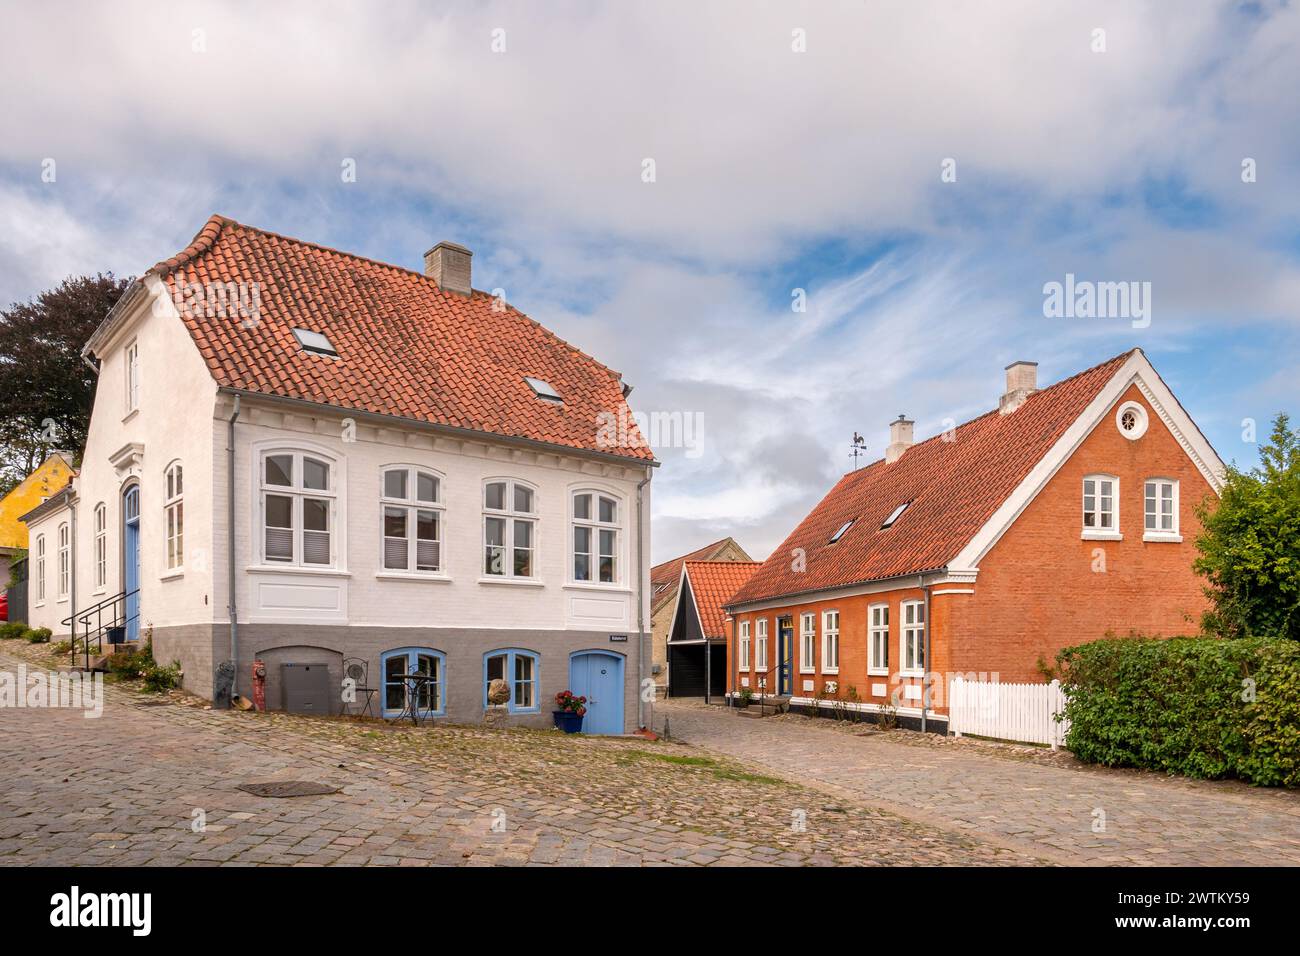 Scena di strade acciottolate con case storiche nella città vecchia di Mariager, Nordjylland, Danimarca Foto Stock